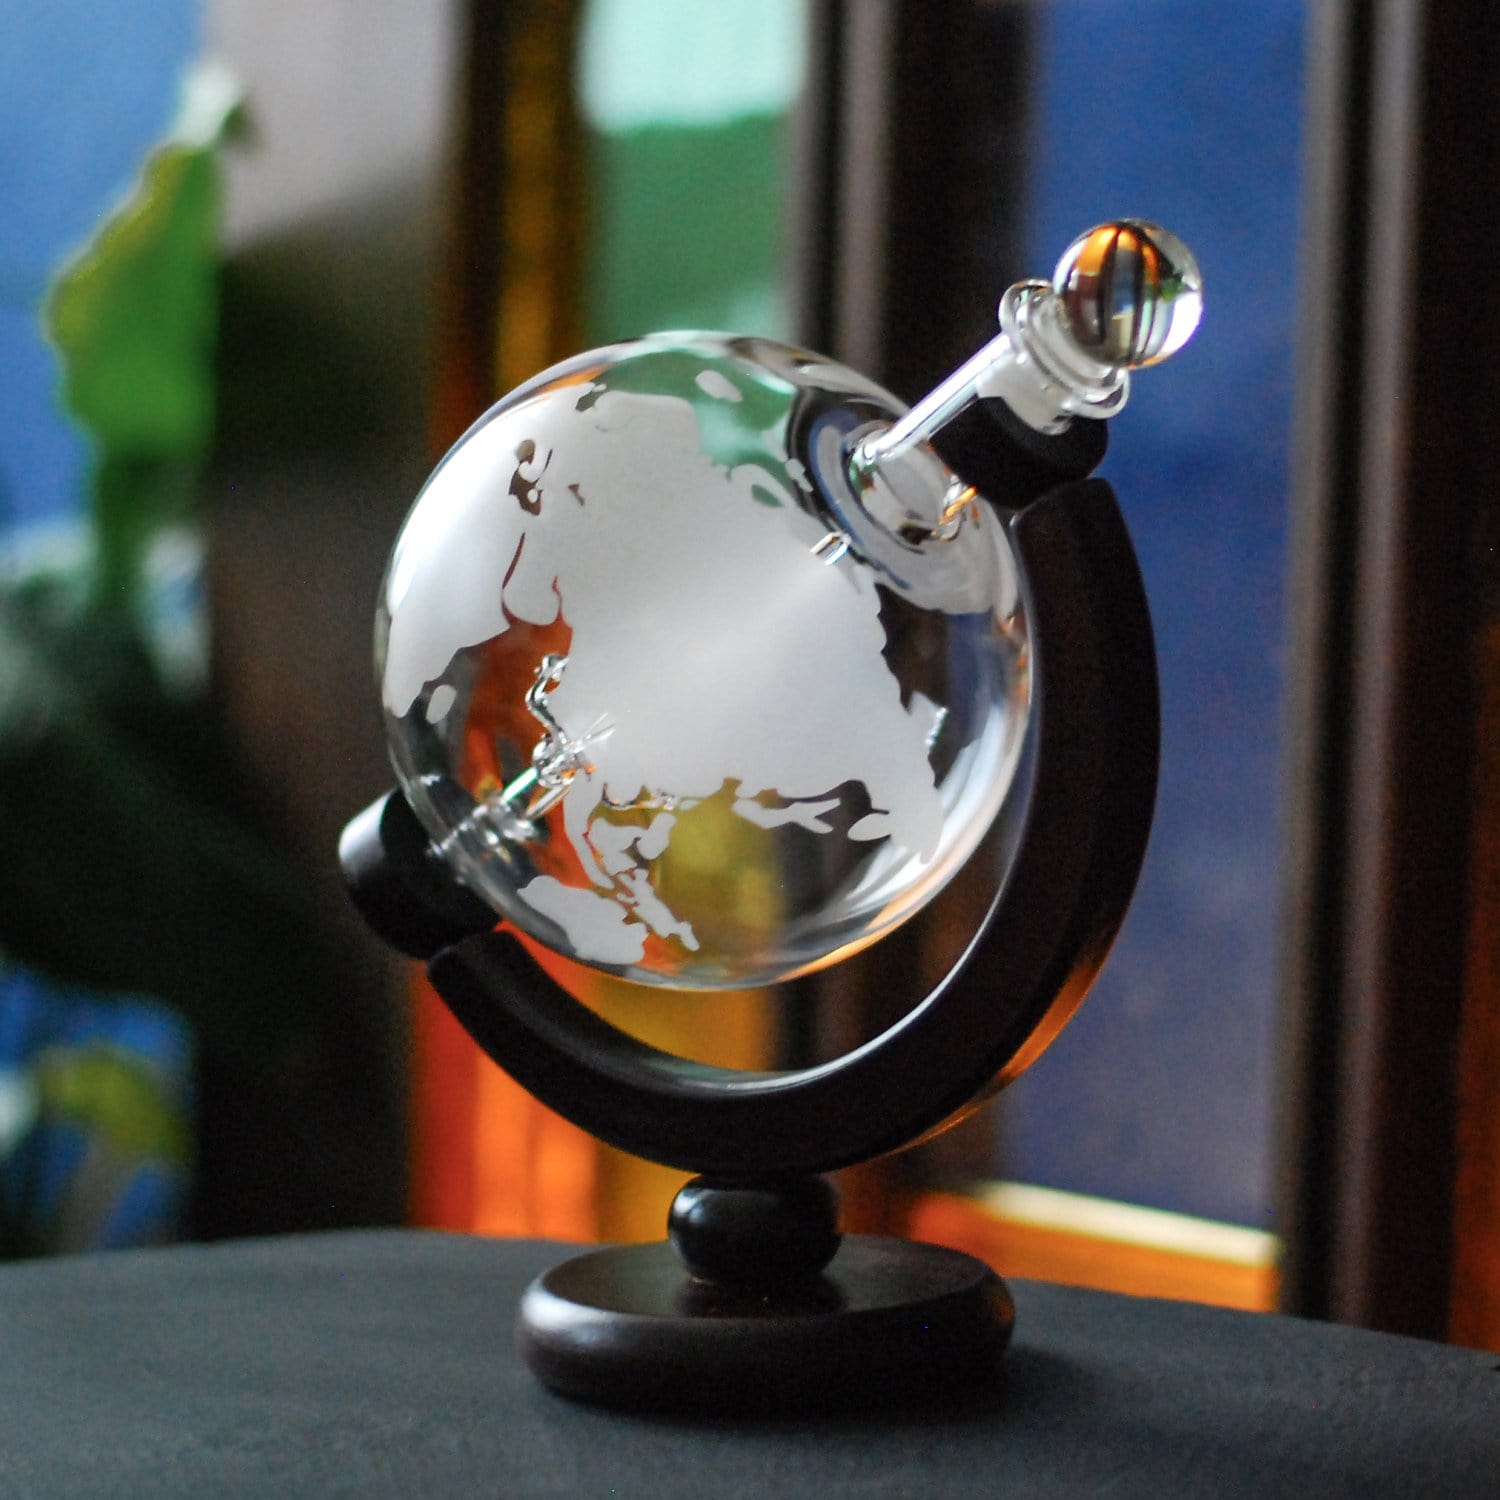 Glaskaraffe-Globus mit Whiskyglas Kompass Geschenkset